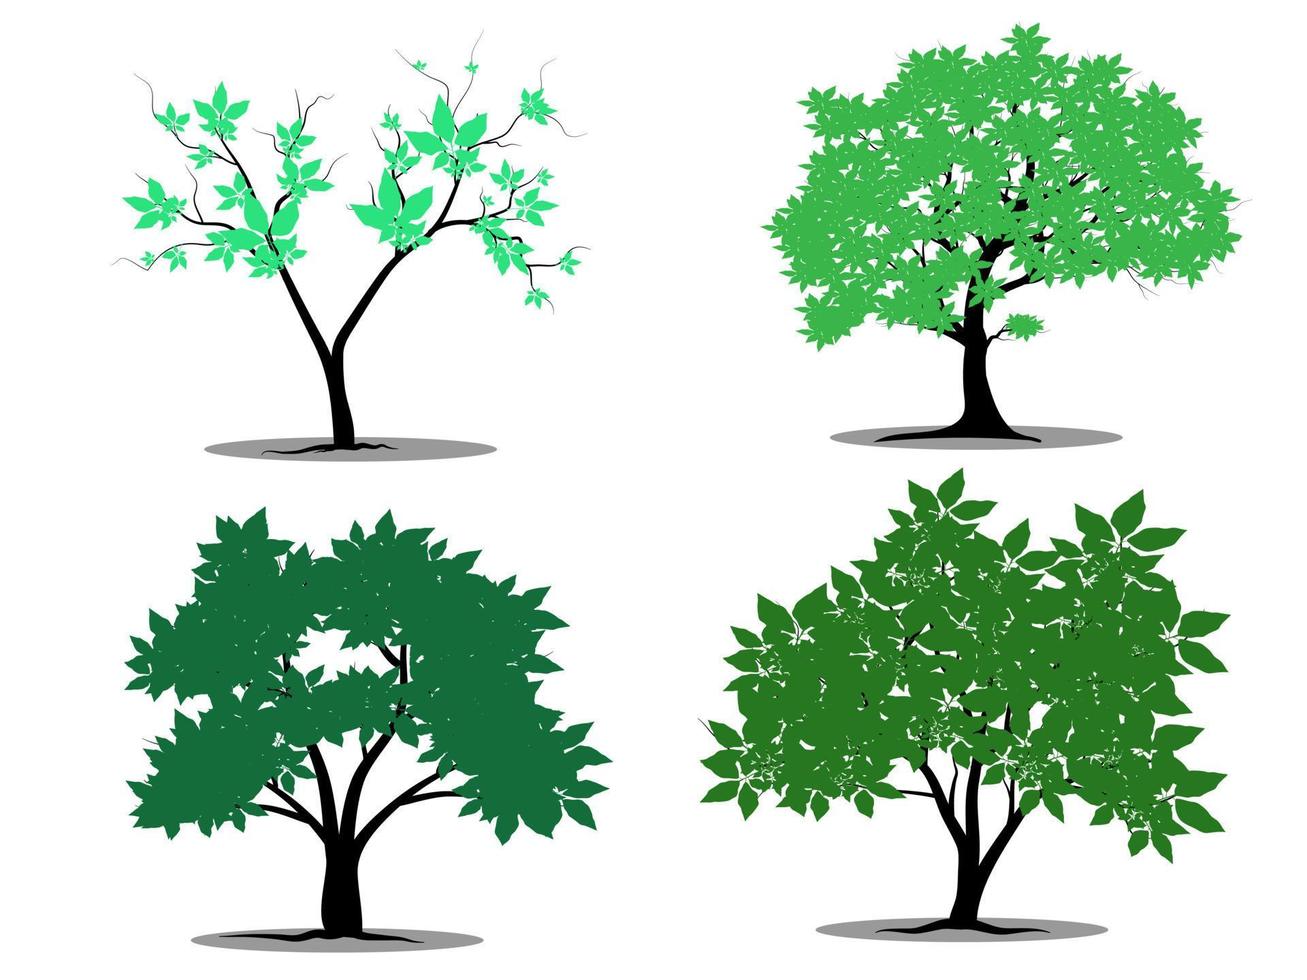 arbre de branche verte ou ensemble de silhouettes d'arbres nus. illustrations isolées dessinées à la main. vecteur